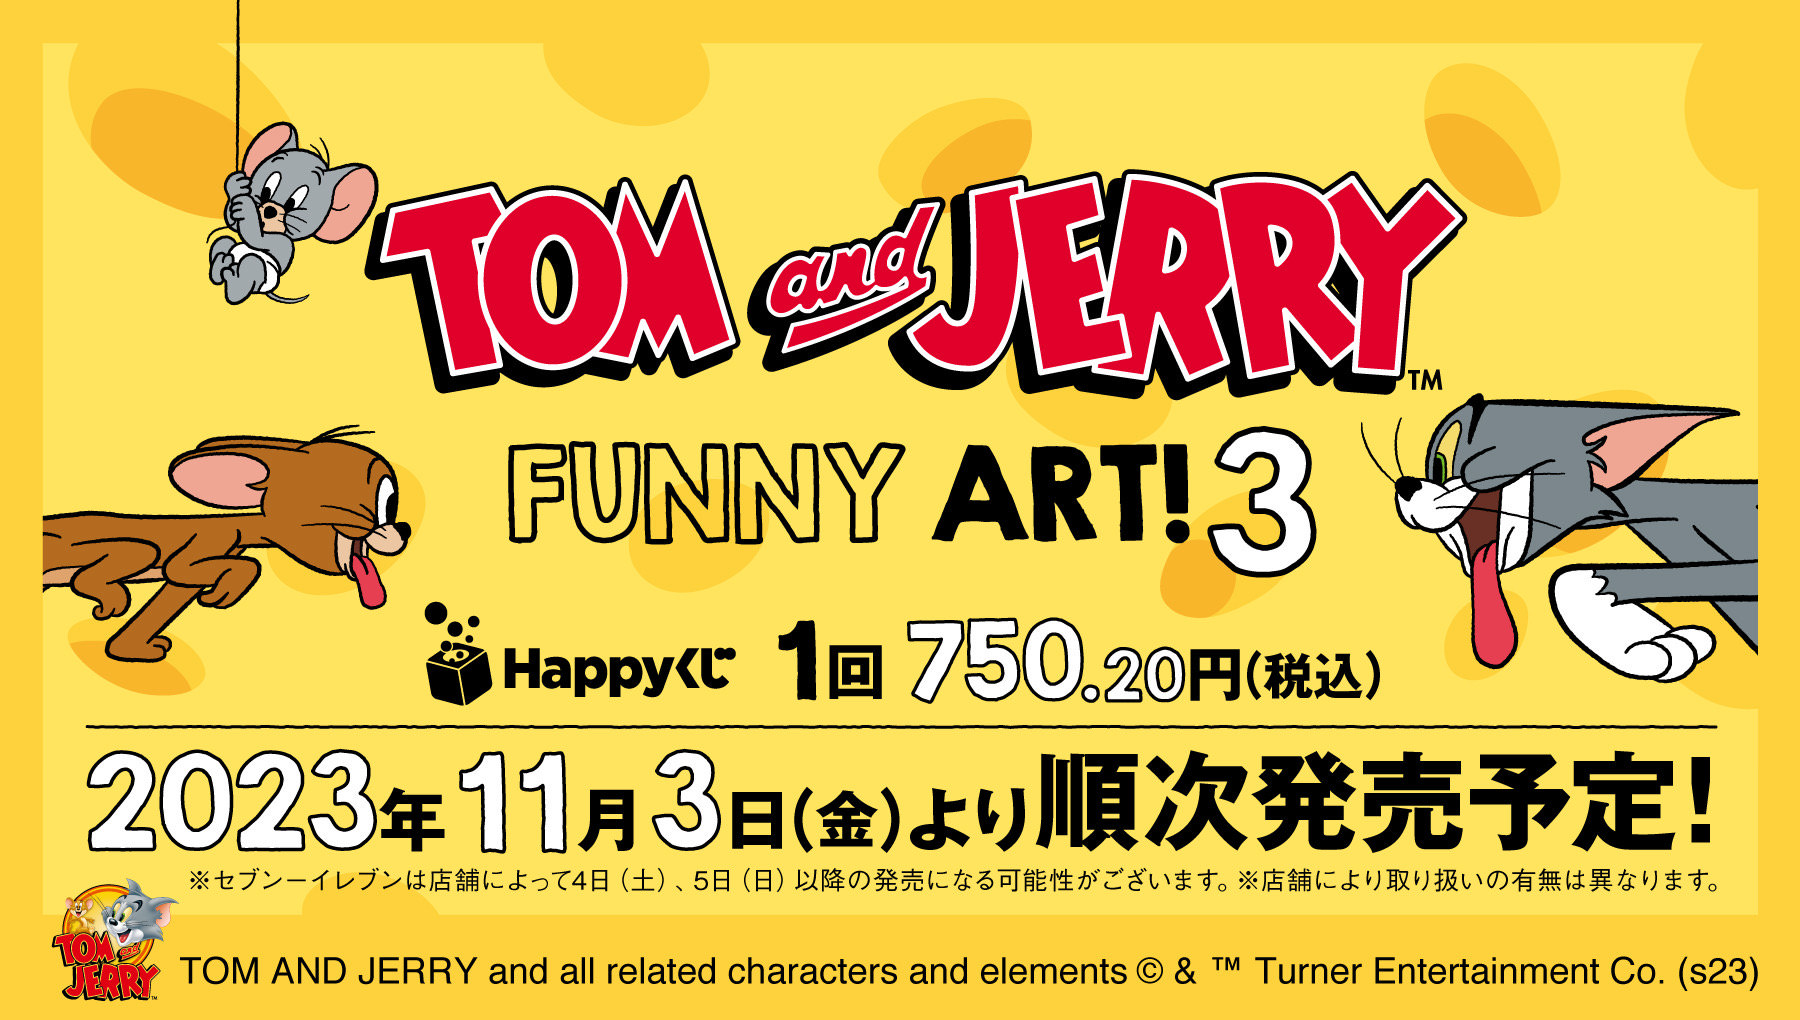 トムとジェリー へんてこ姿のHappyくじ 第3弾 11月3日より全国発売!